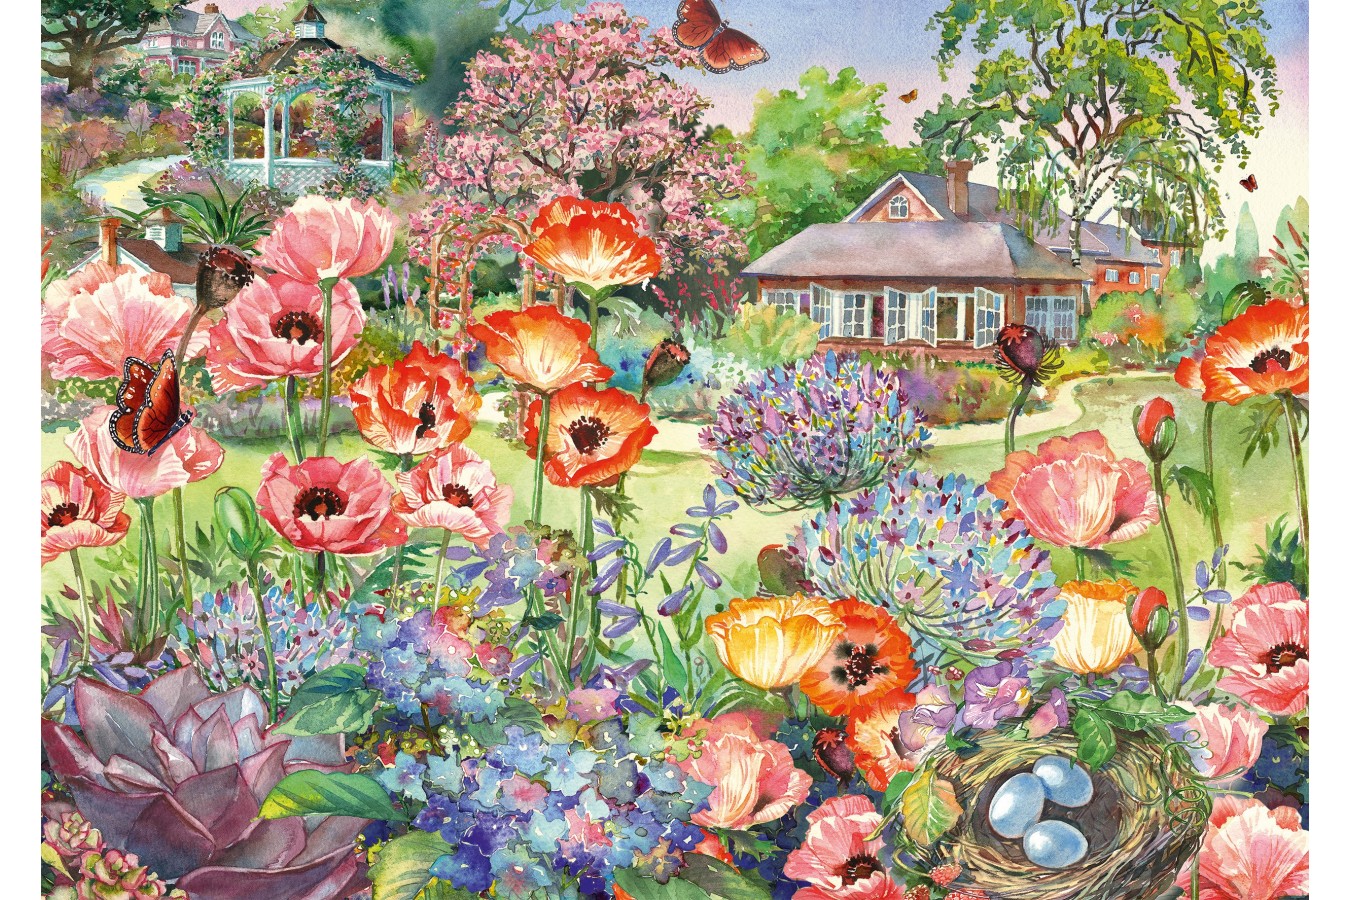 Puzzle 1000 piese - Blooming Garden (Schmidt-58975)